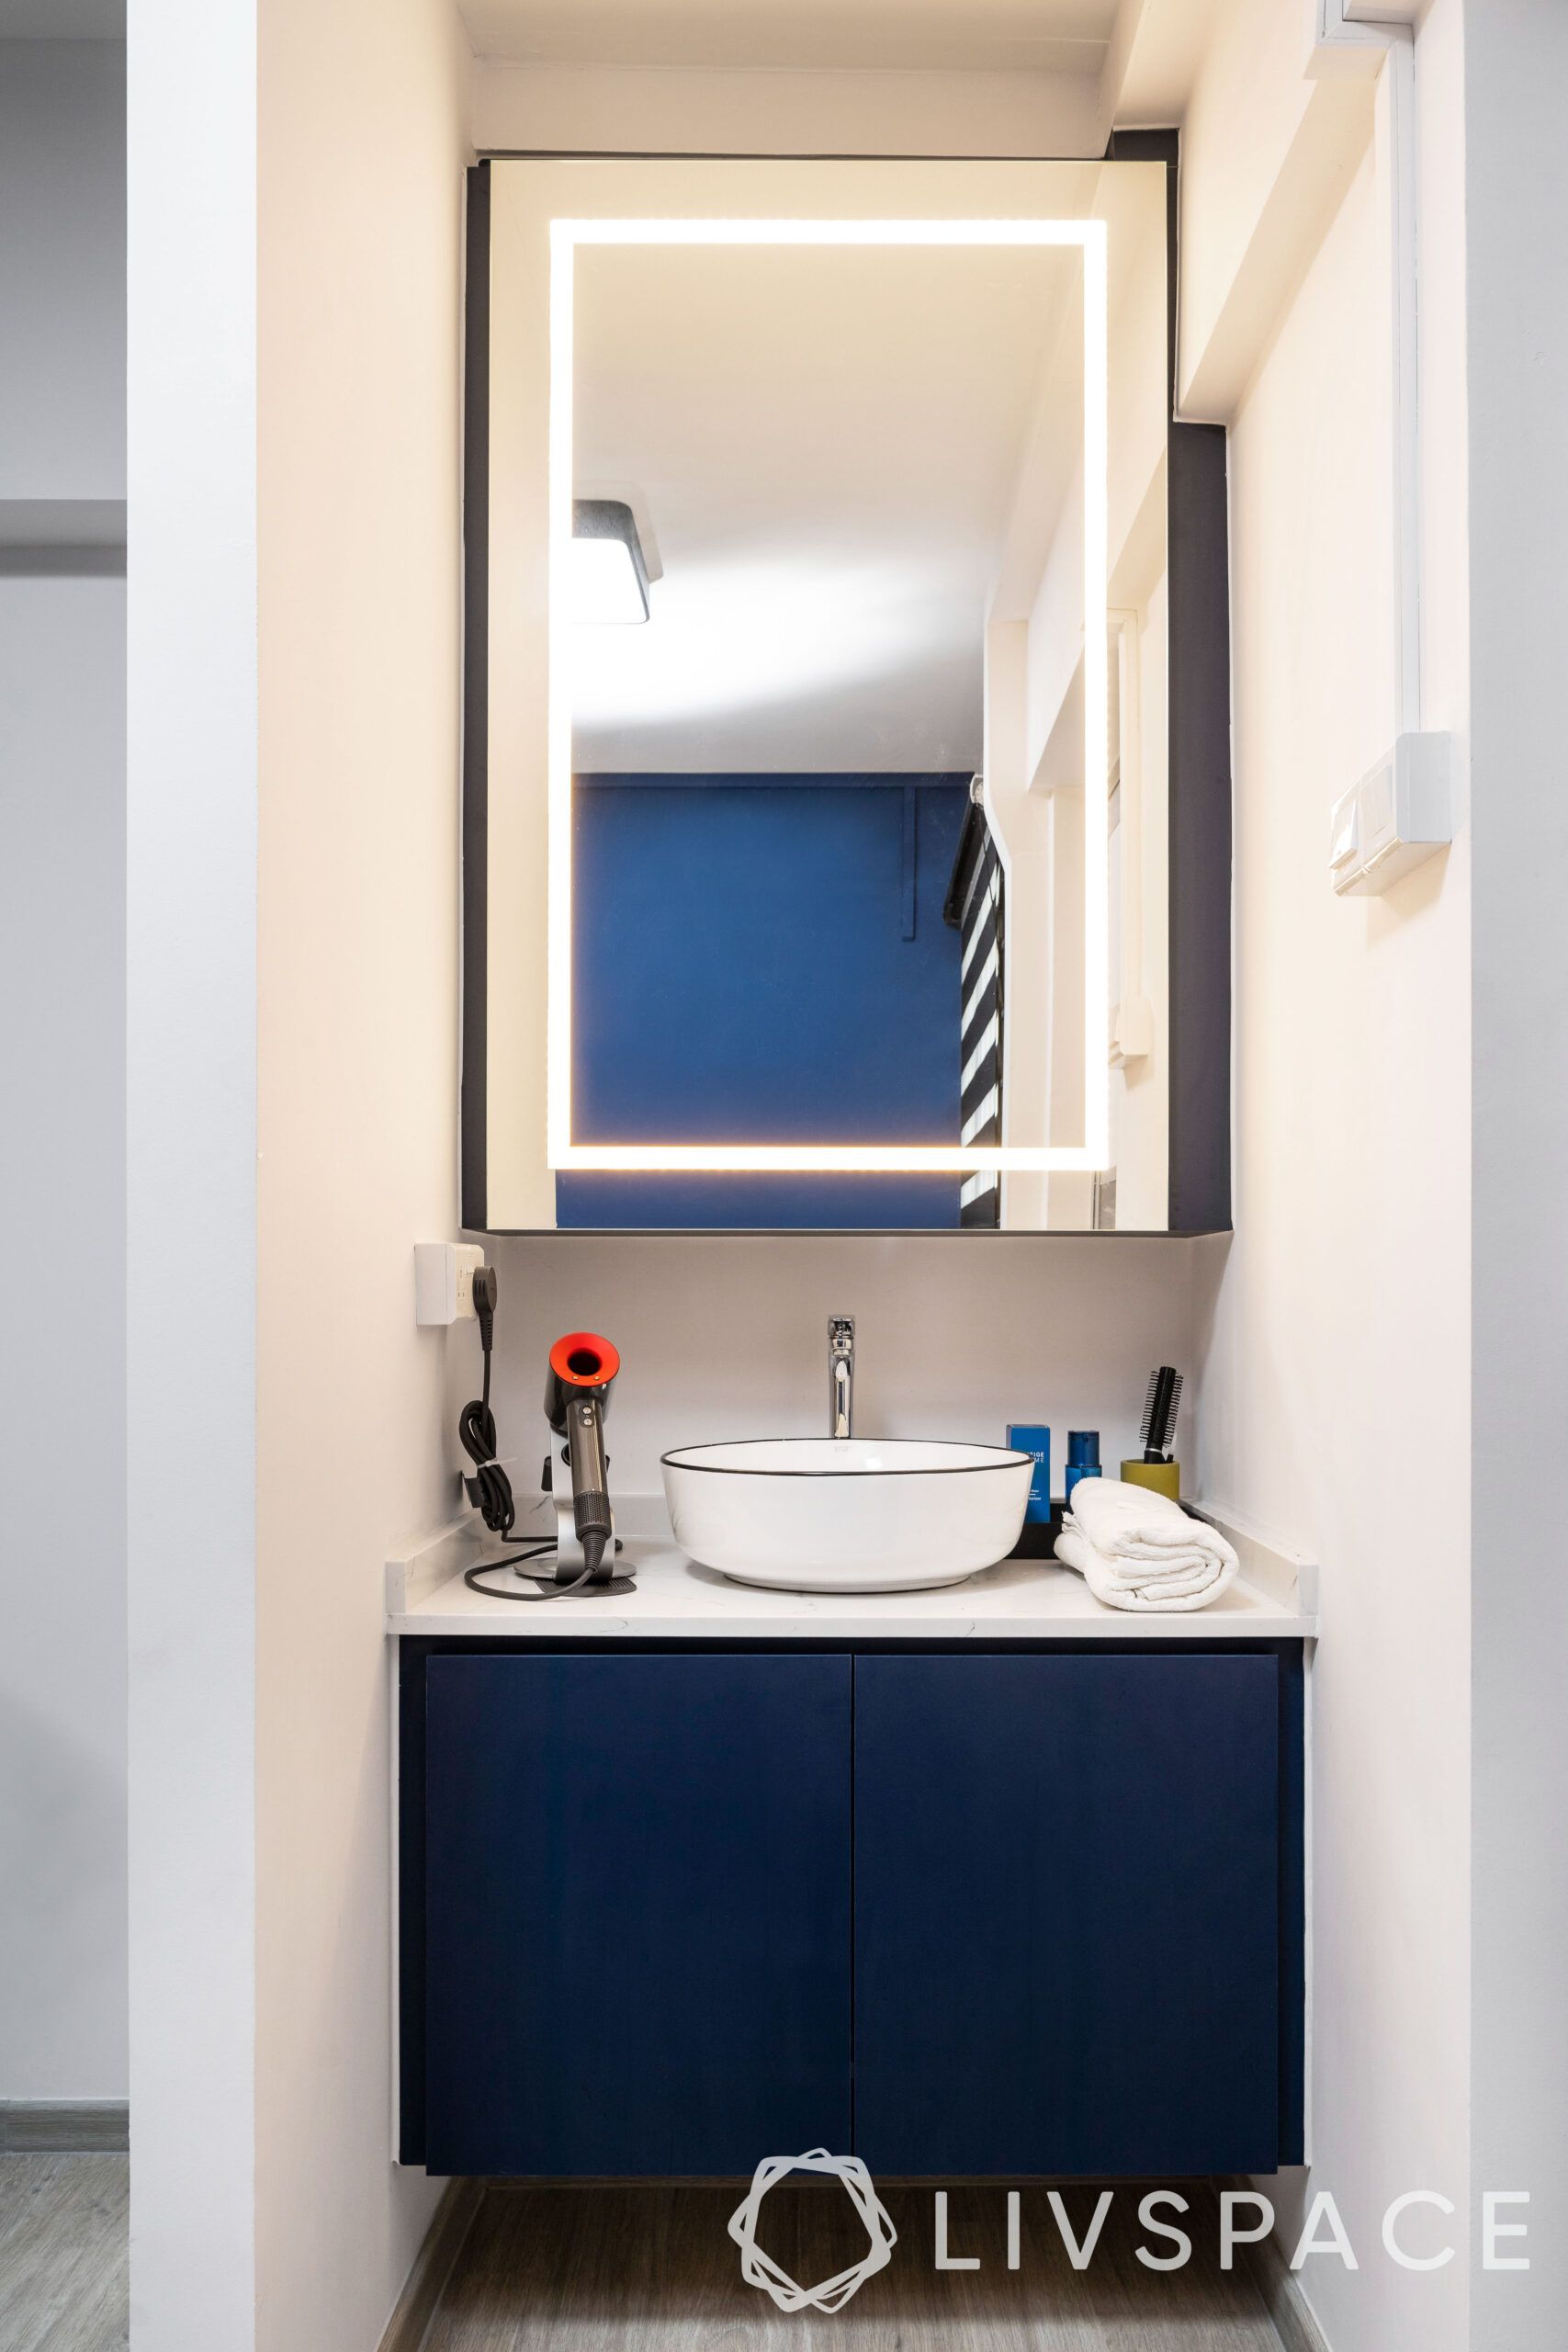 hdb interior design singapore-mirror light-sink-storage cabinets